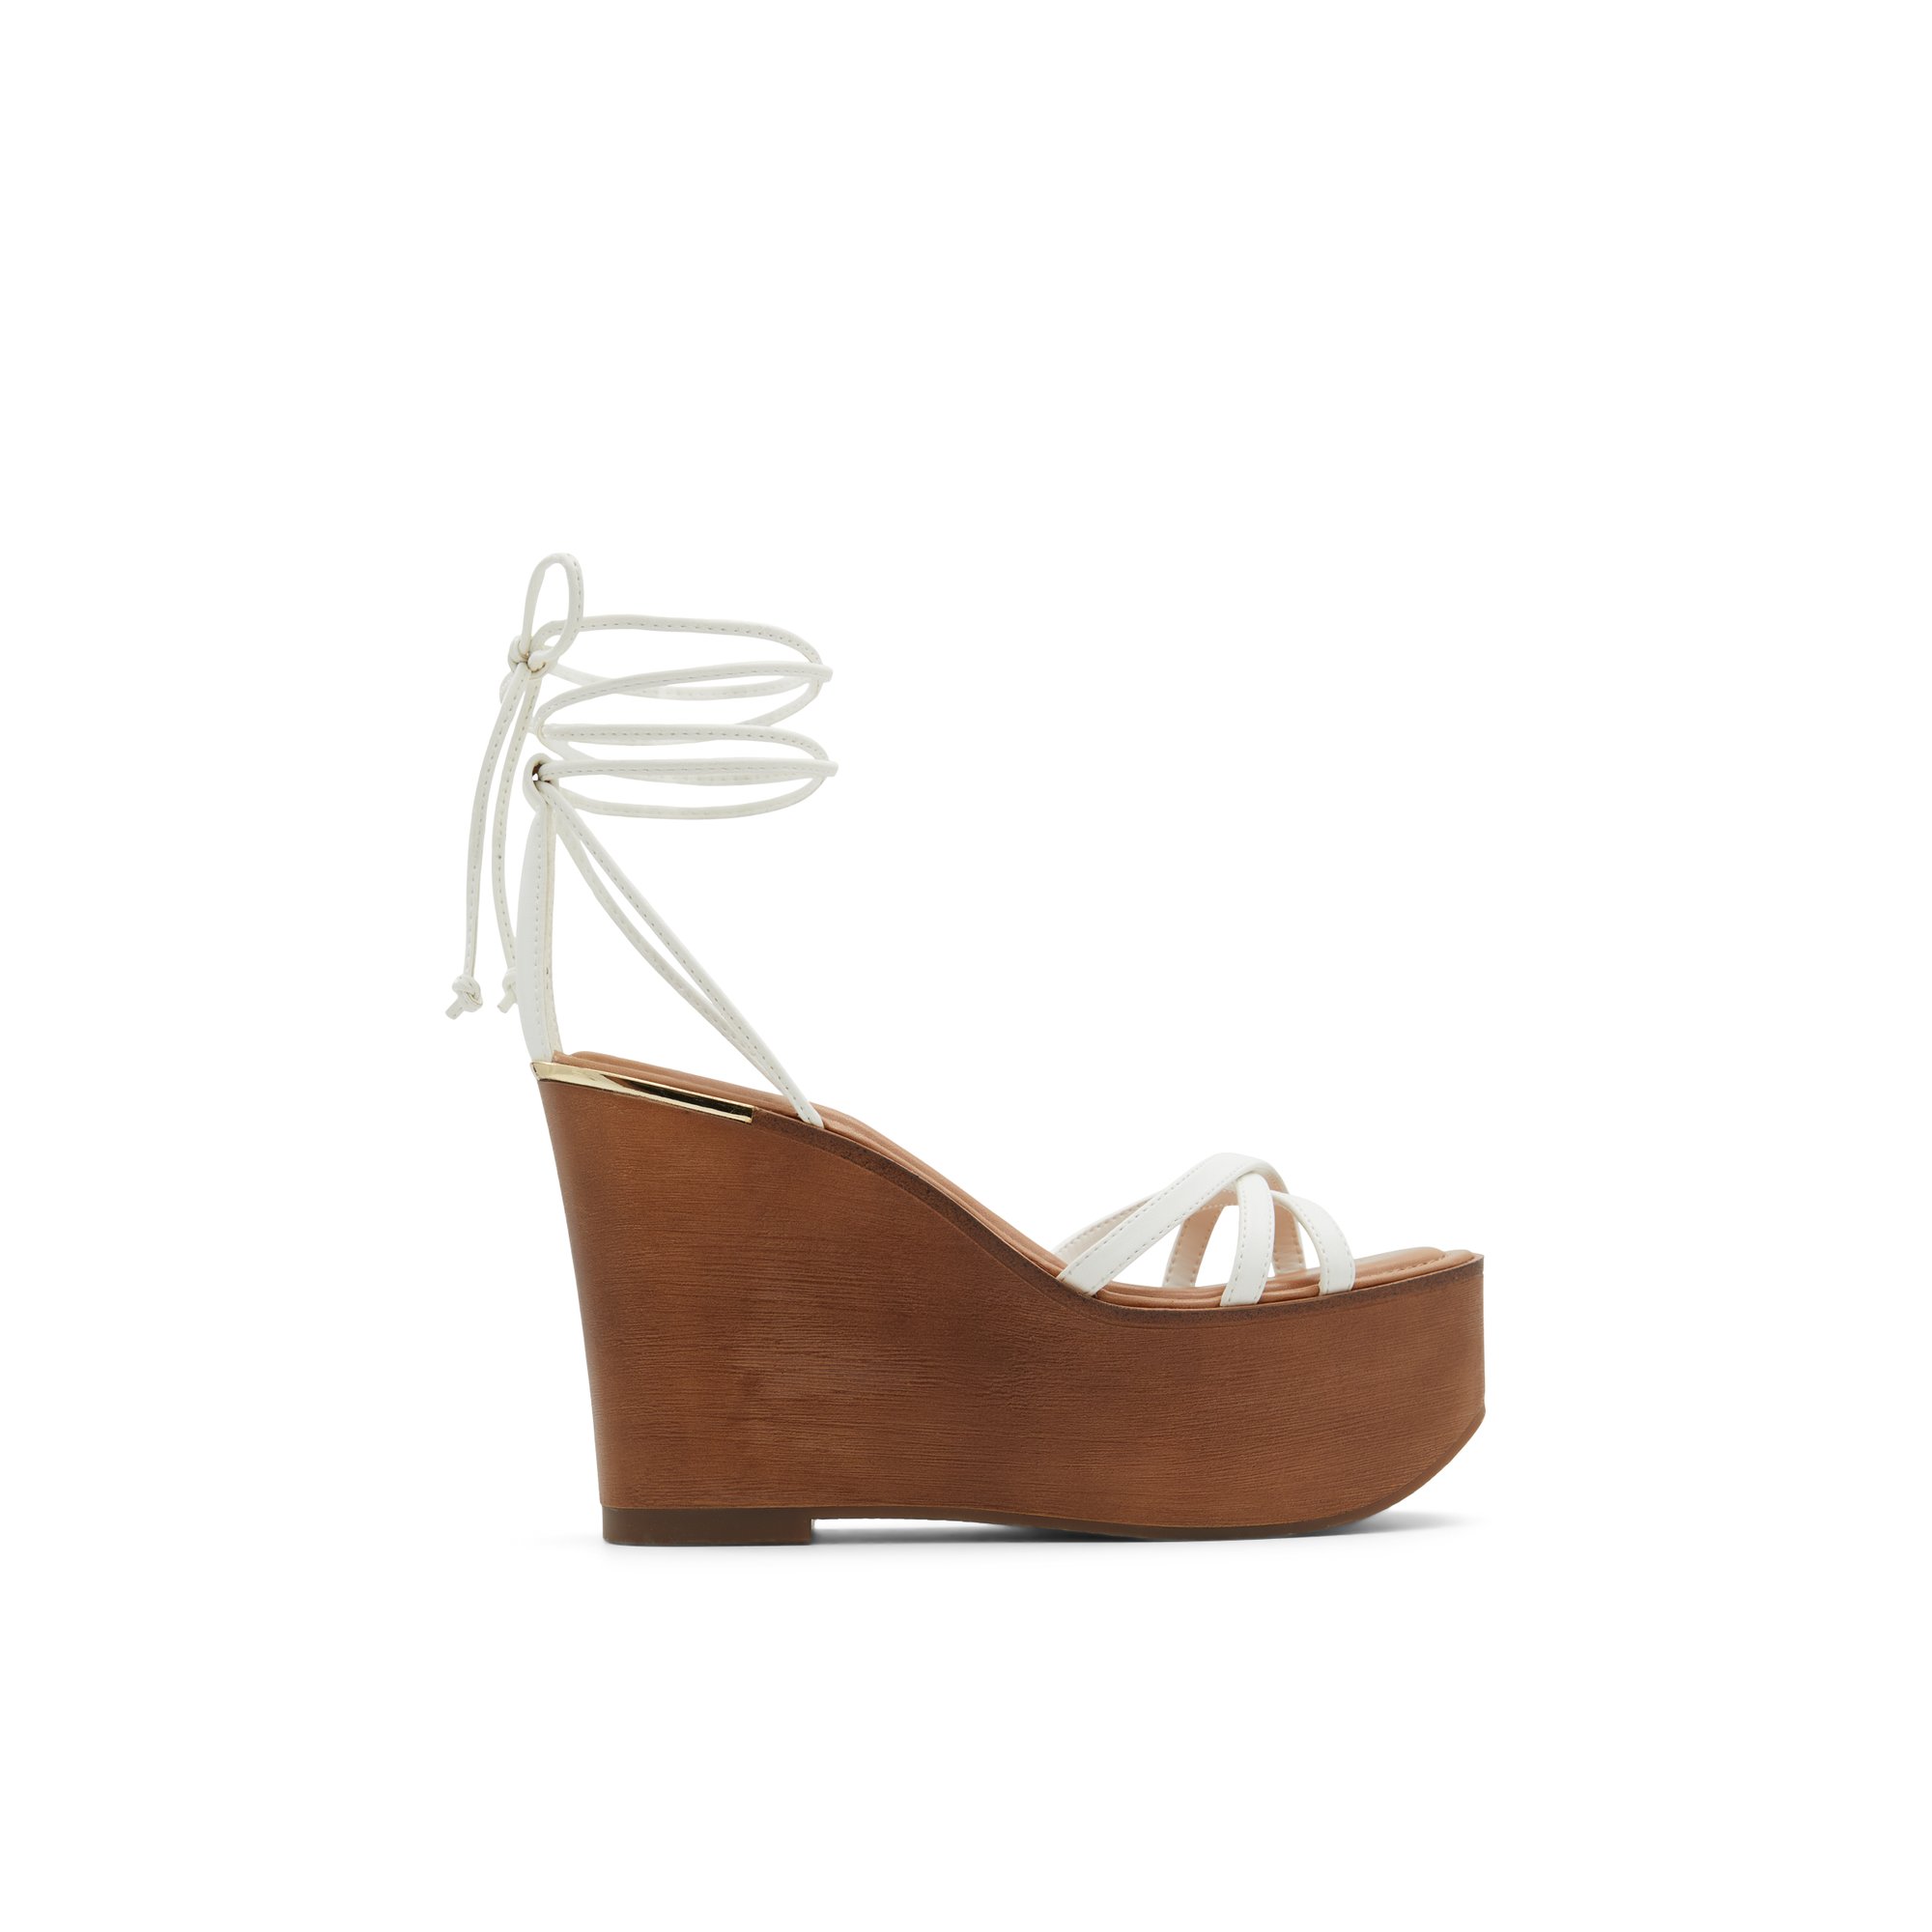 ALDO Lamarina - Women's Sandals Wedges - White